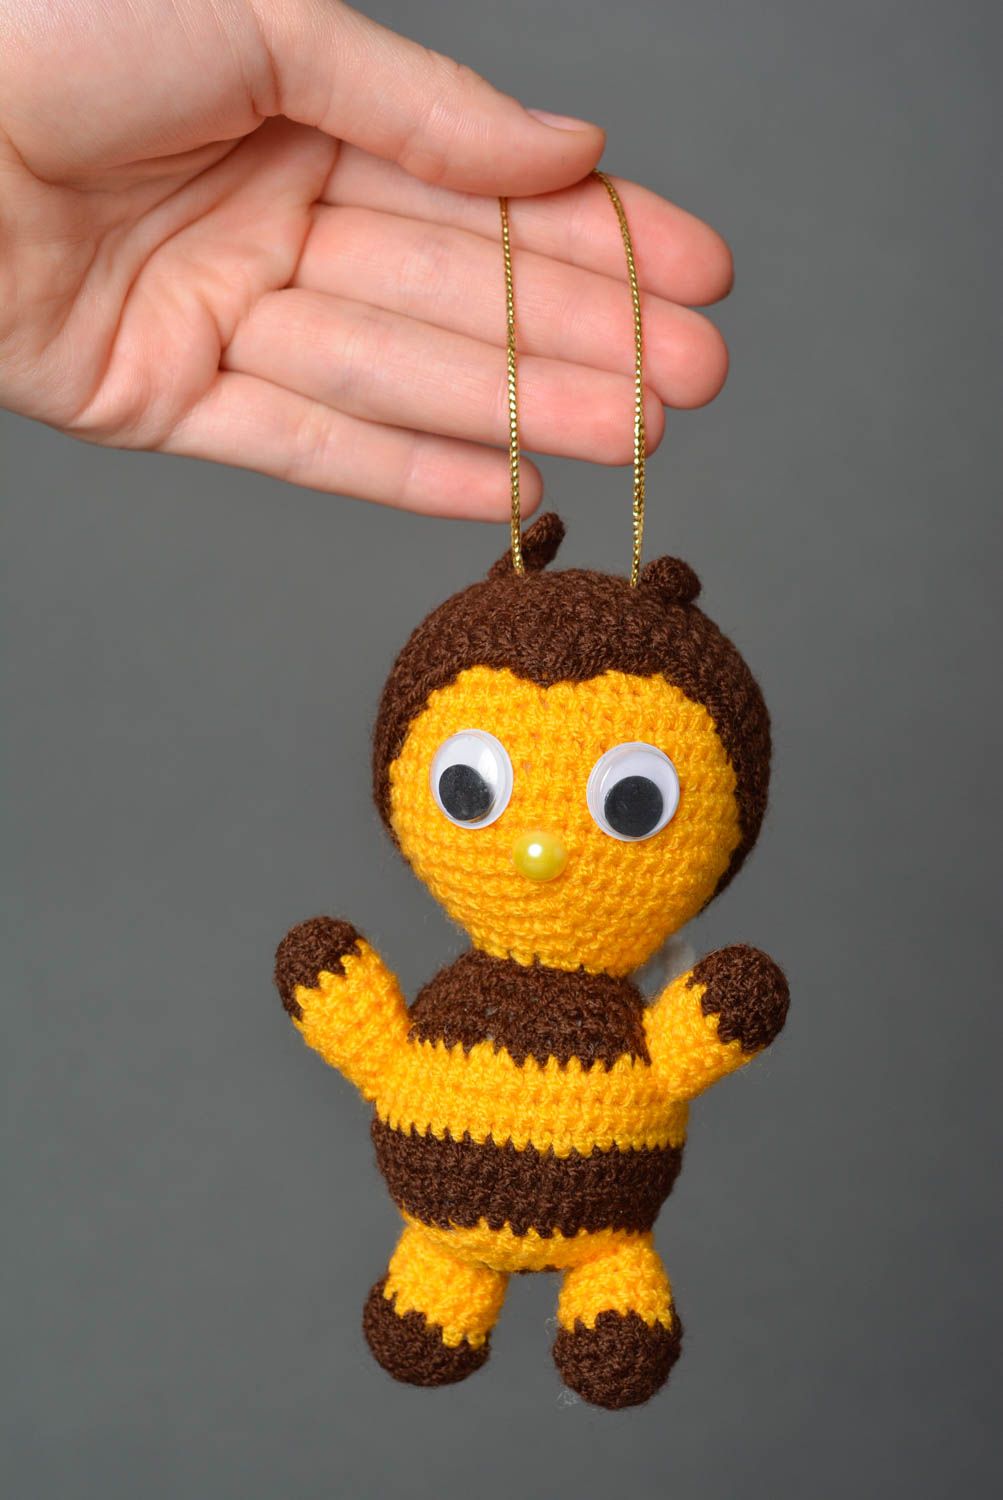 Peluche original hecho a mano juguete tejido al crochet regalo para niño Abeja foto 4